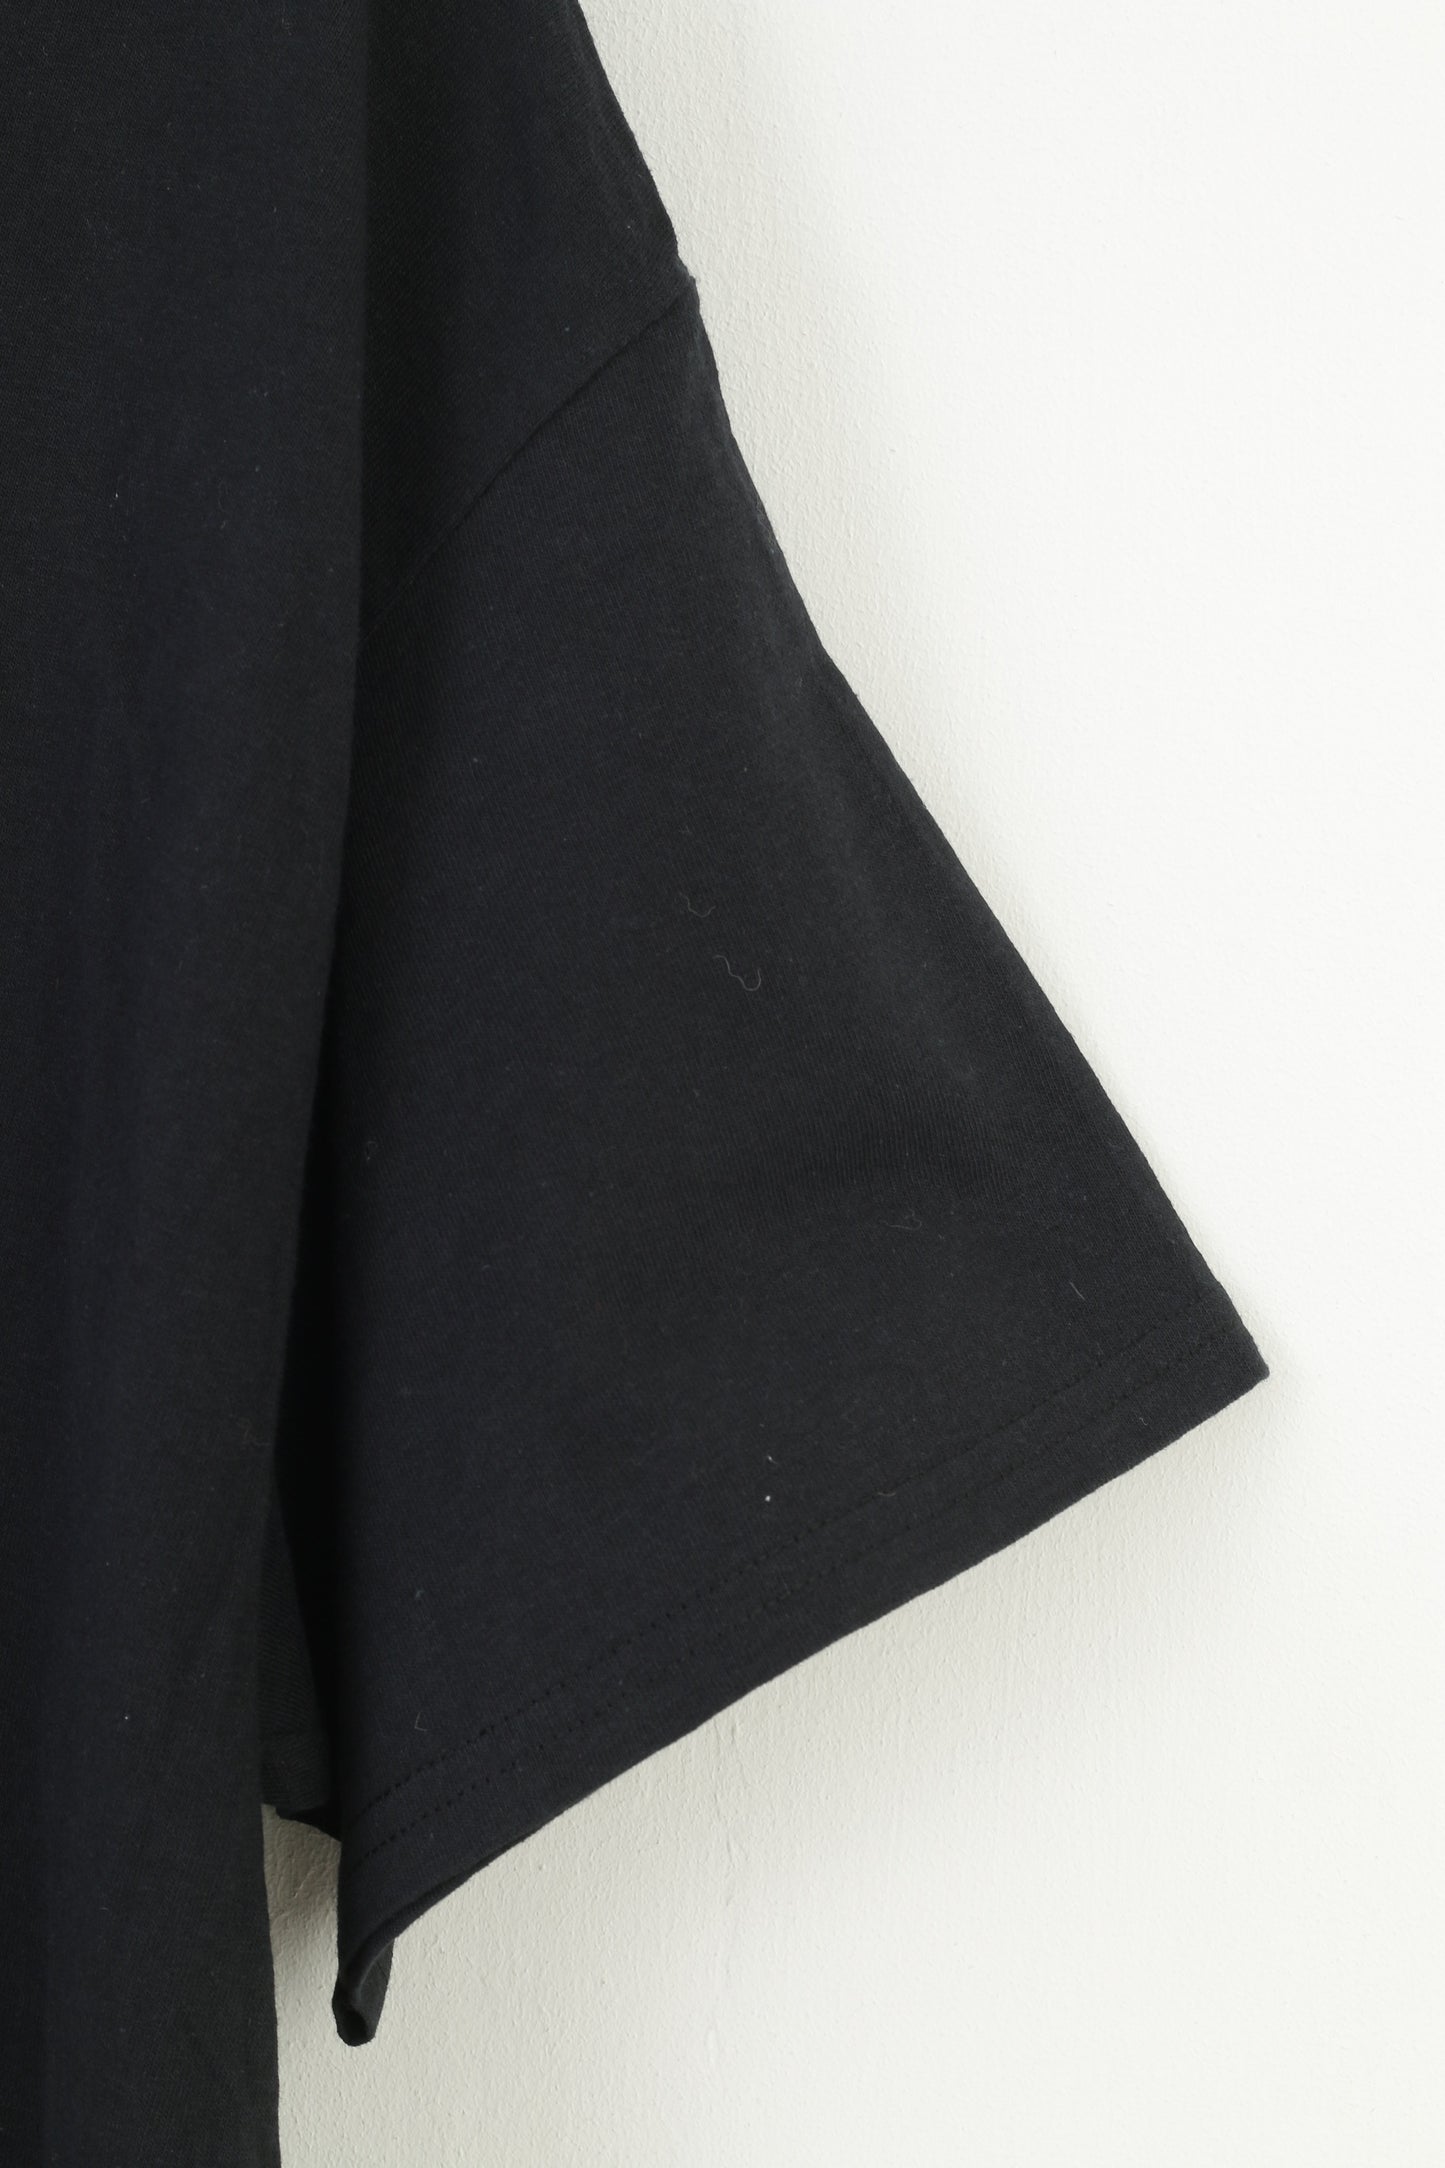 Gildan hommes XL T-Shirt noir coton graphique Ghostbusters classique col rond petit haut